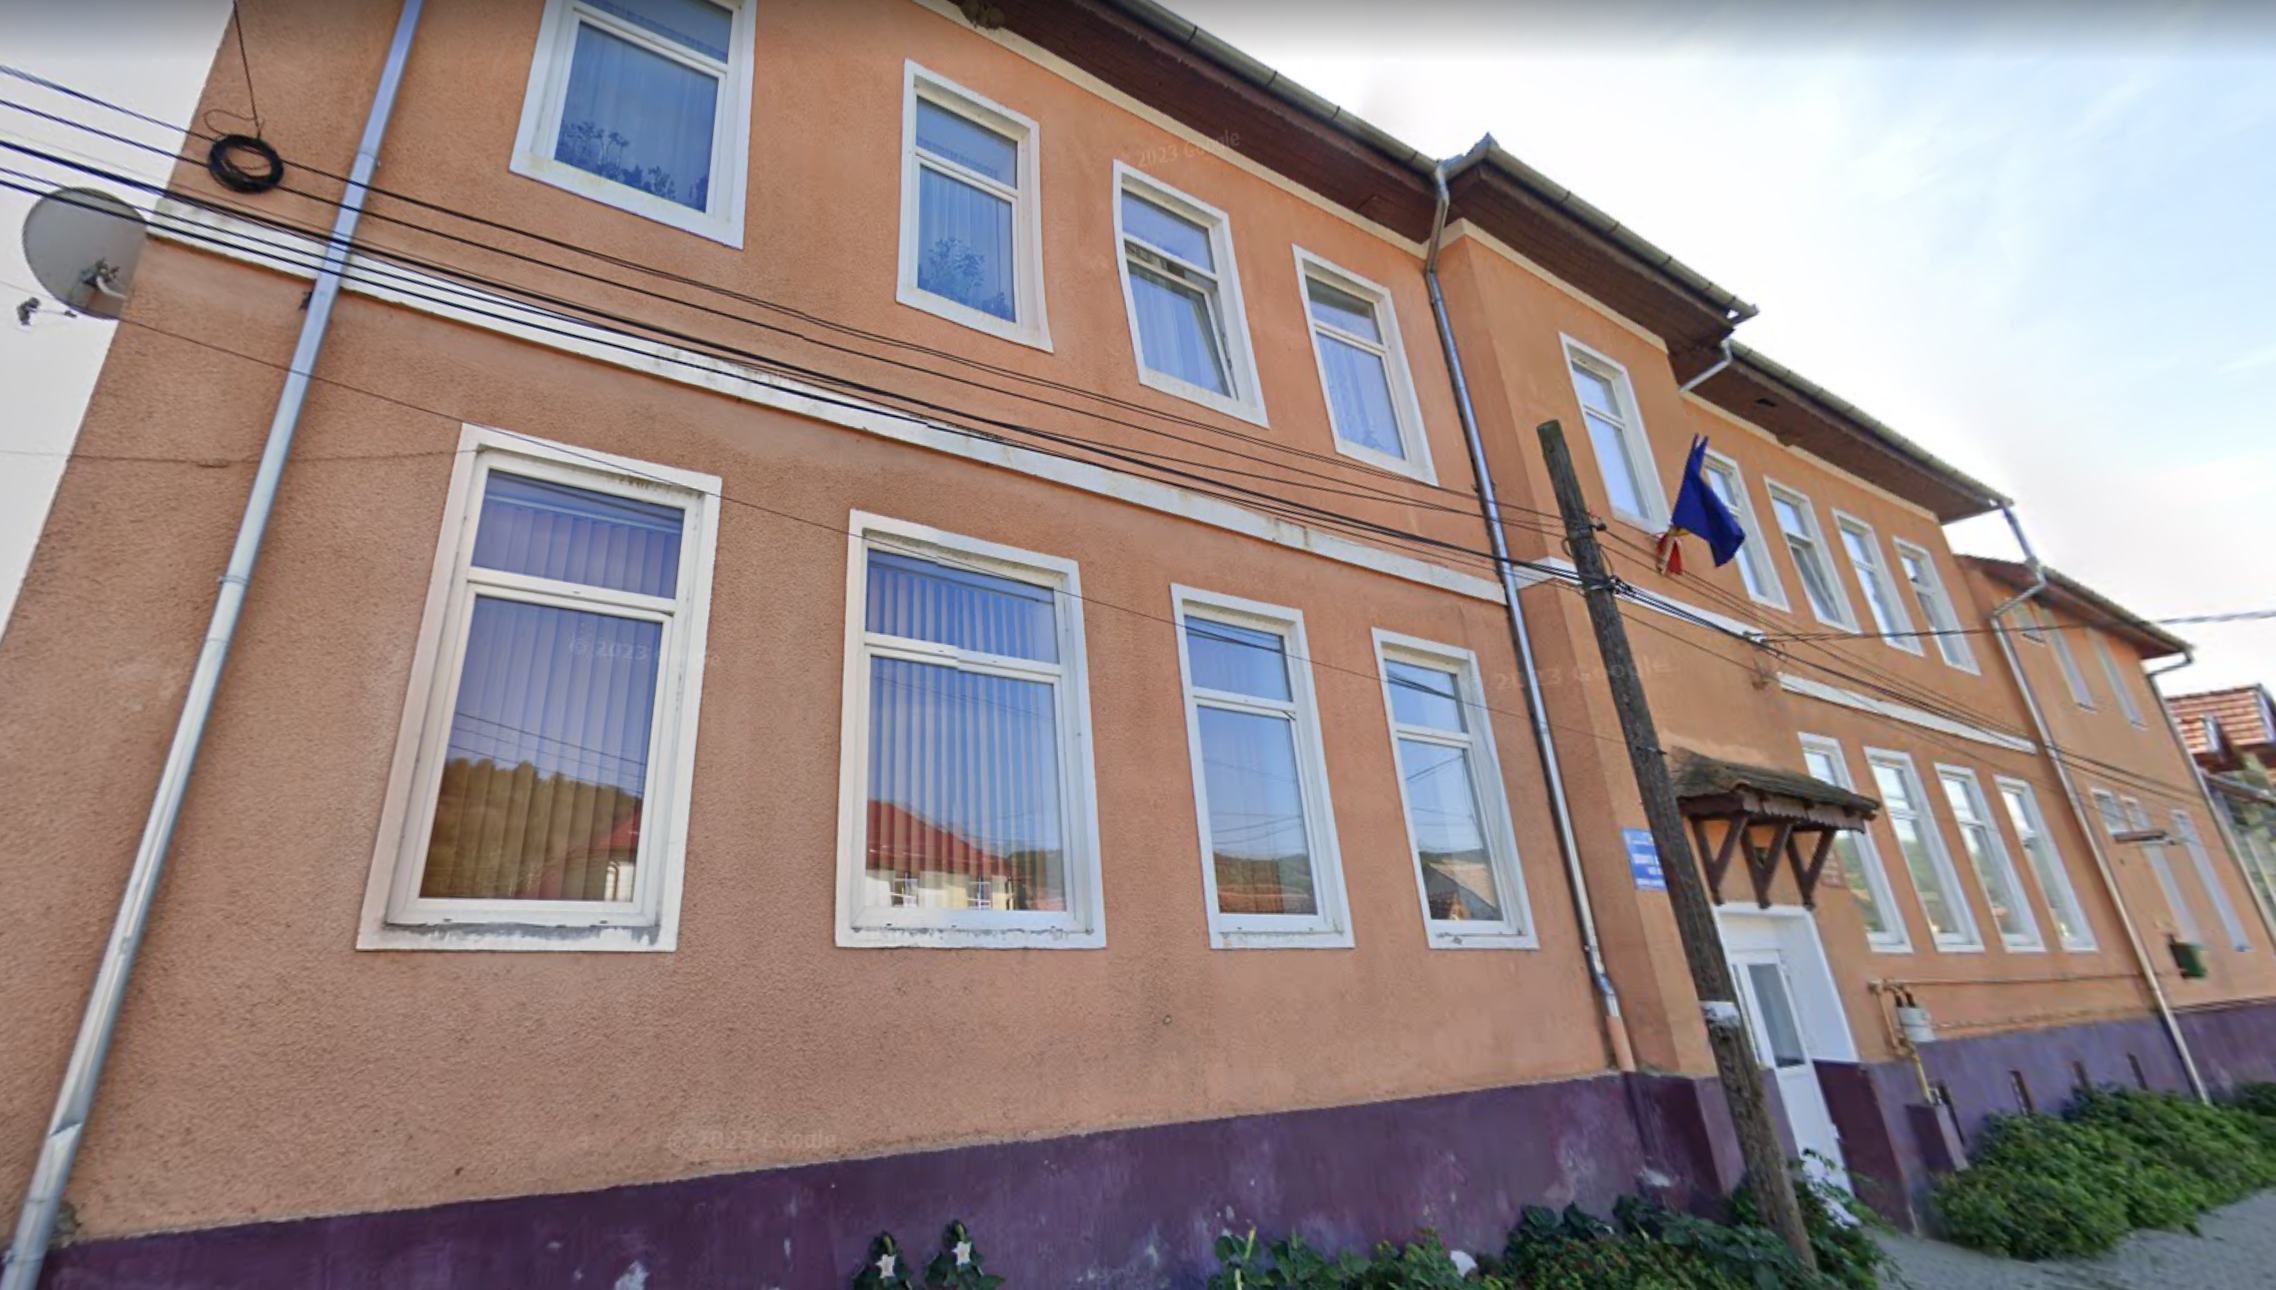 Concluziile primarului, după prăbușirea tavanului școlii din Sibiu: „vântul și porumbeii”